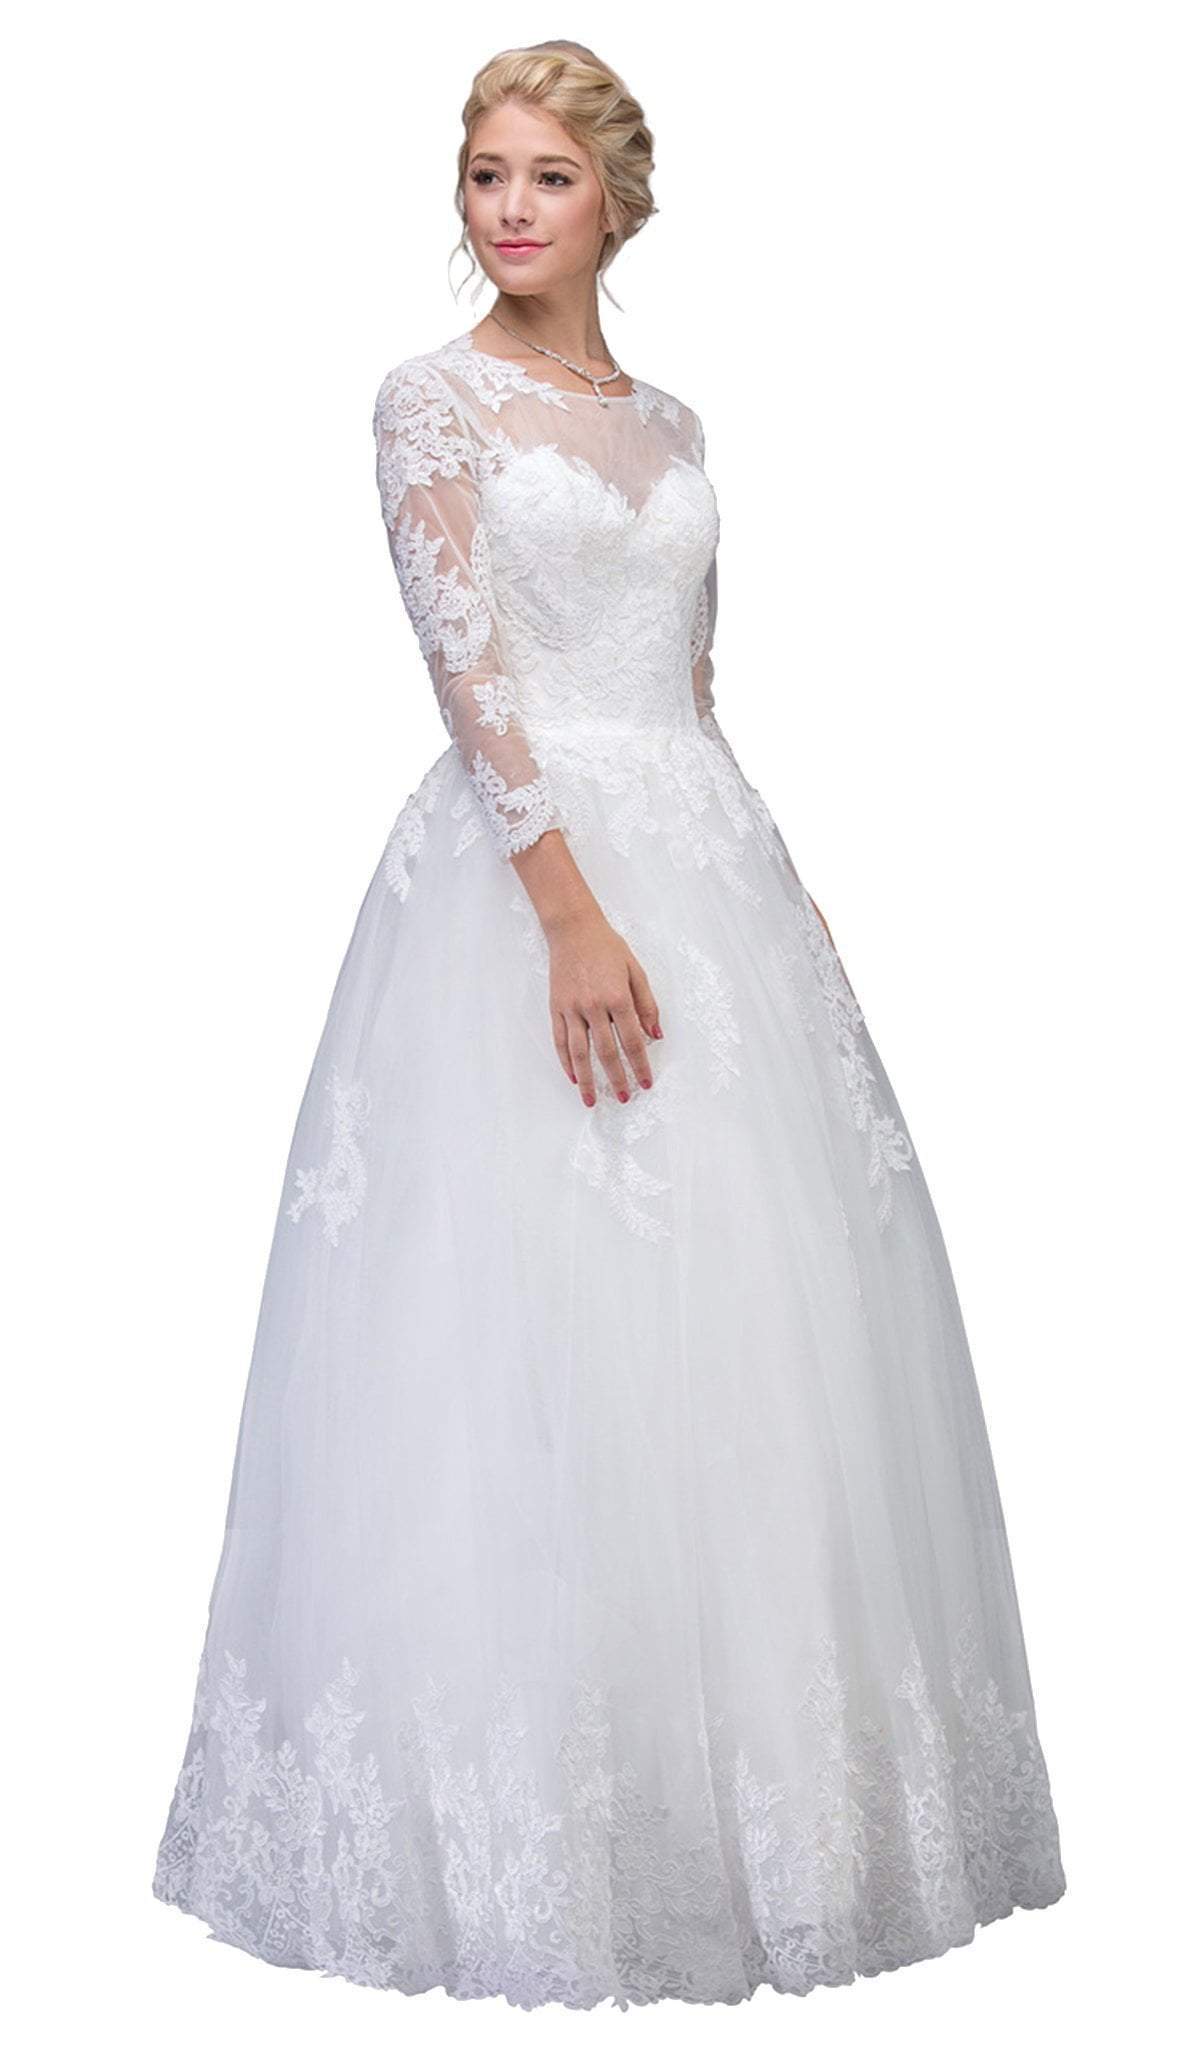 Image of Eureka Fashion Bridal - Lace Long Sleeve Wedding Evening Gown